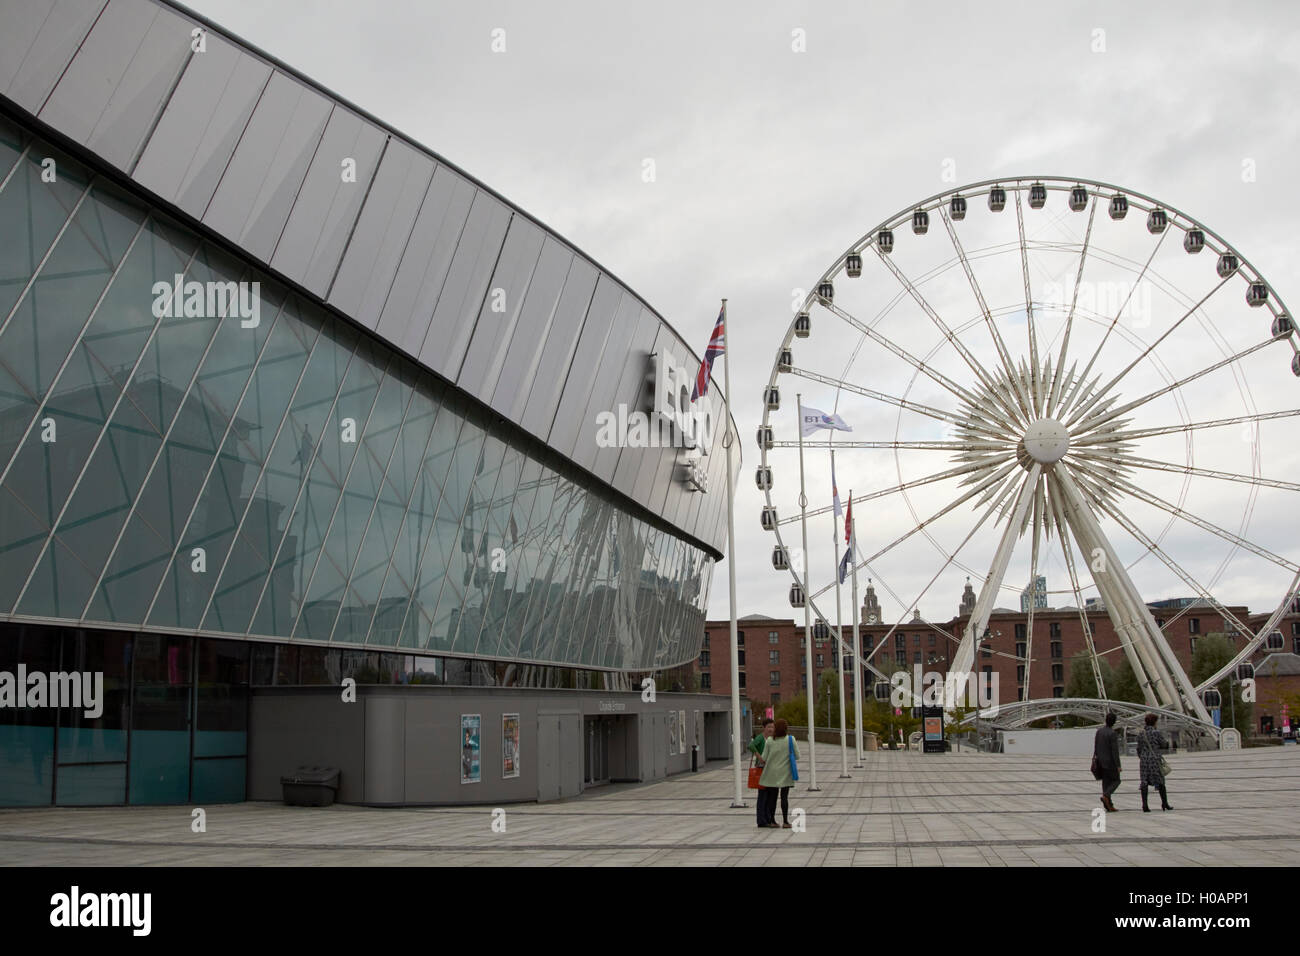 echo arena and big wheel Liverpool Merseyside UK Stock Photo